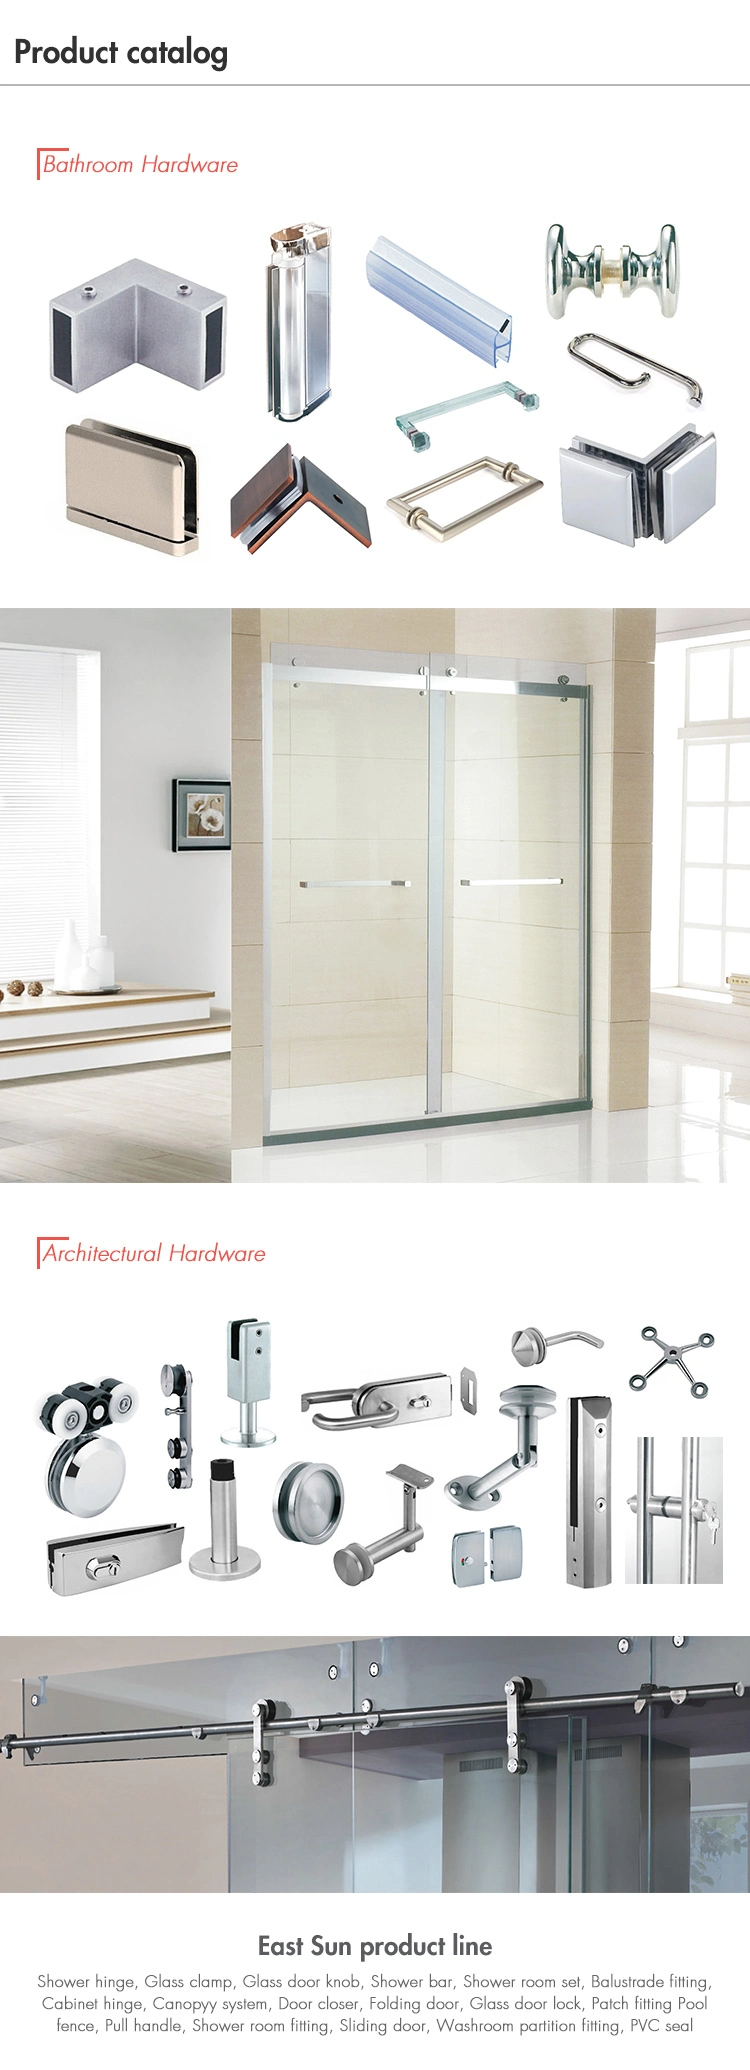 Rectangle Tubular Furniture Handle Stainless Steel Door Handle Shower Door Pull Handle (pH-080)